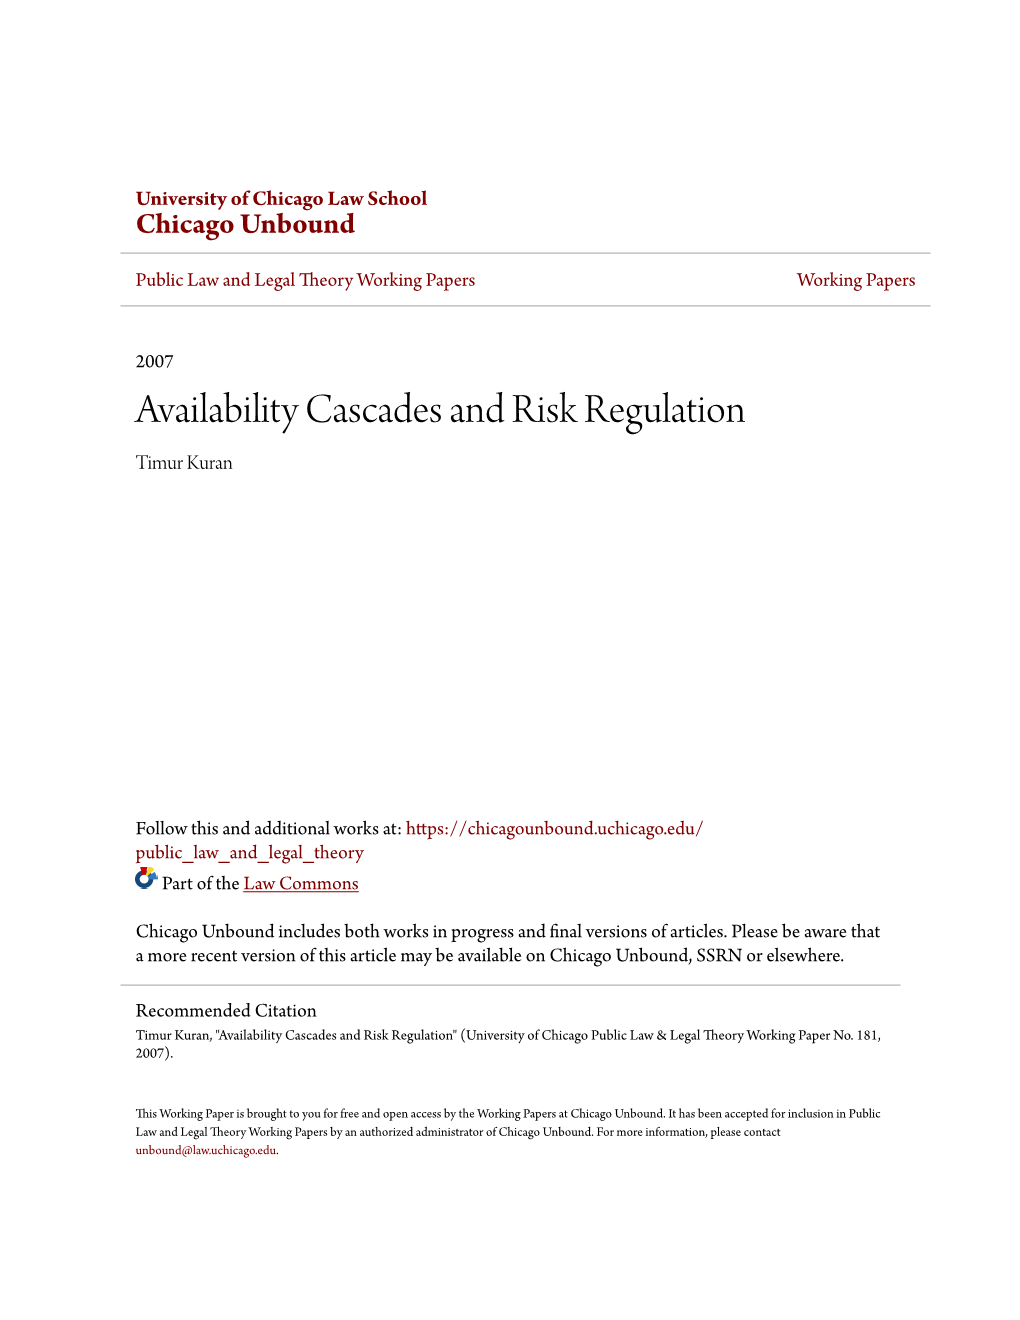 Availability Cascades and Risk Regulation Timur Kuran